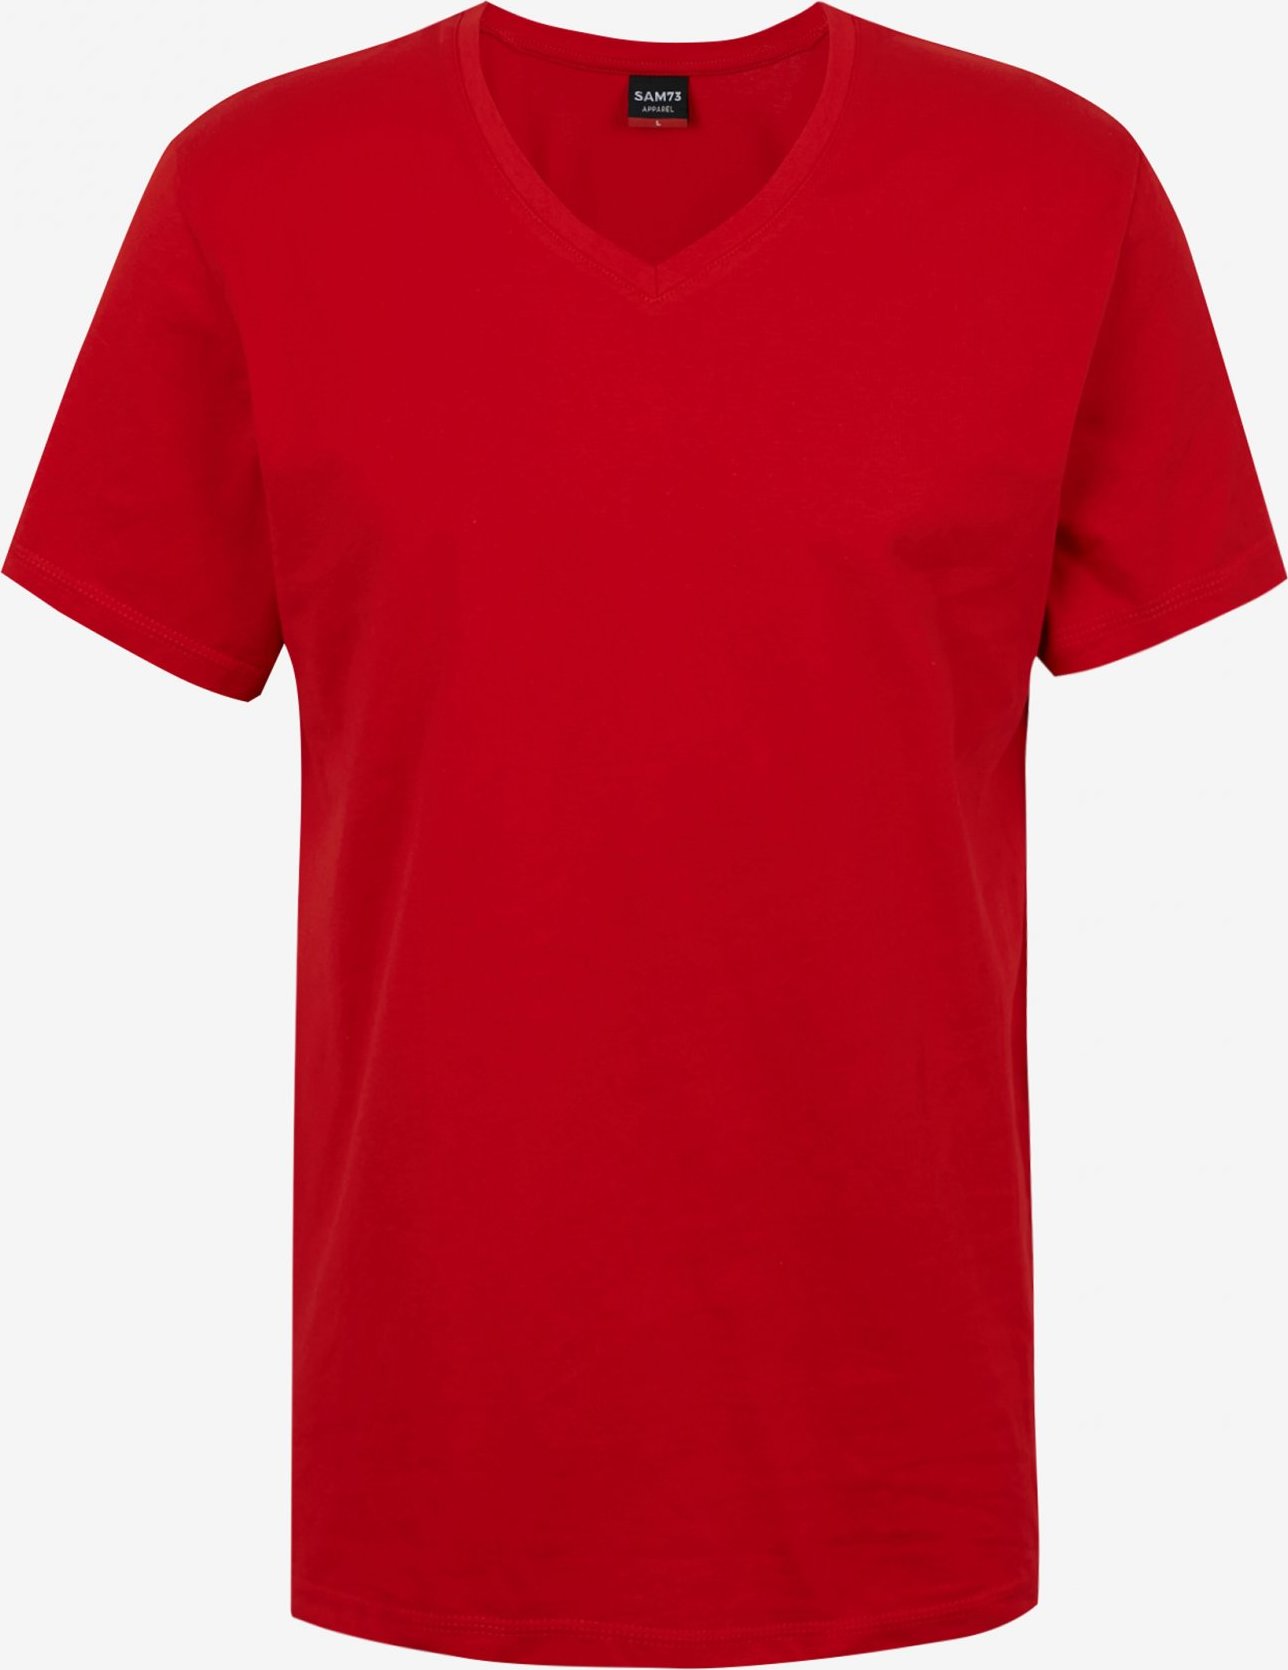 Pánské triko SAM73 blane červené Velikost: S